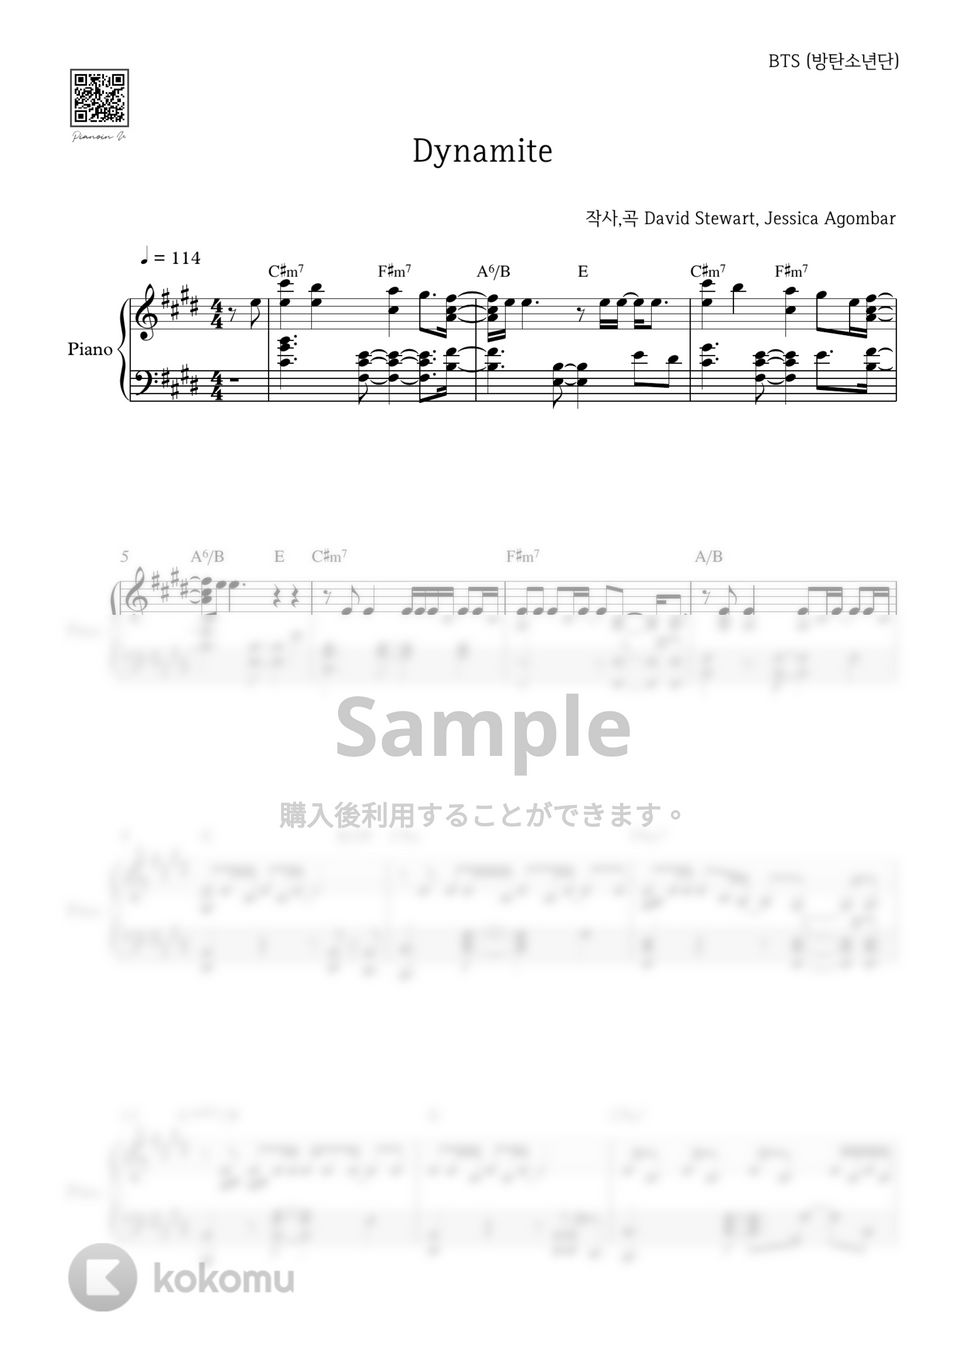 防弾少年団(BTS) - DYNAMITE by PIANOiNU